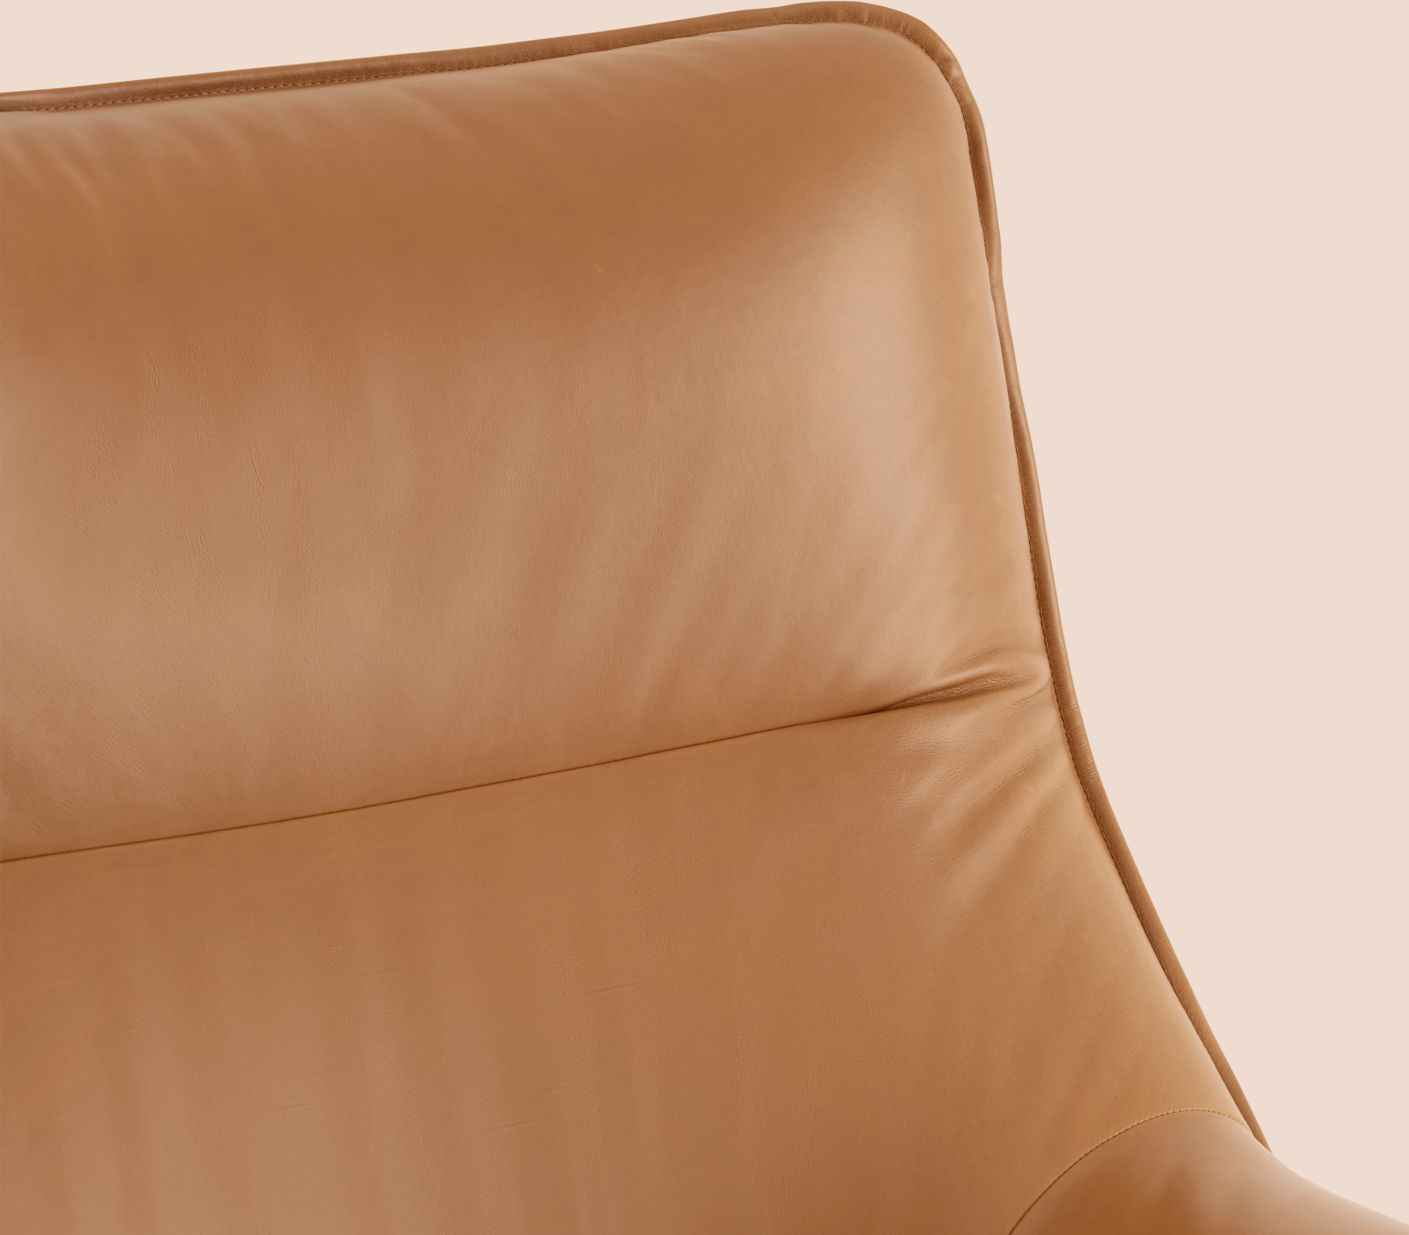 Doze Loungesessel in Braun / Schwarz präsentiert im Onlineshop von KAQTU Design AG. Sessel mit Armlehnen ist von Muuto